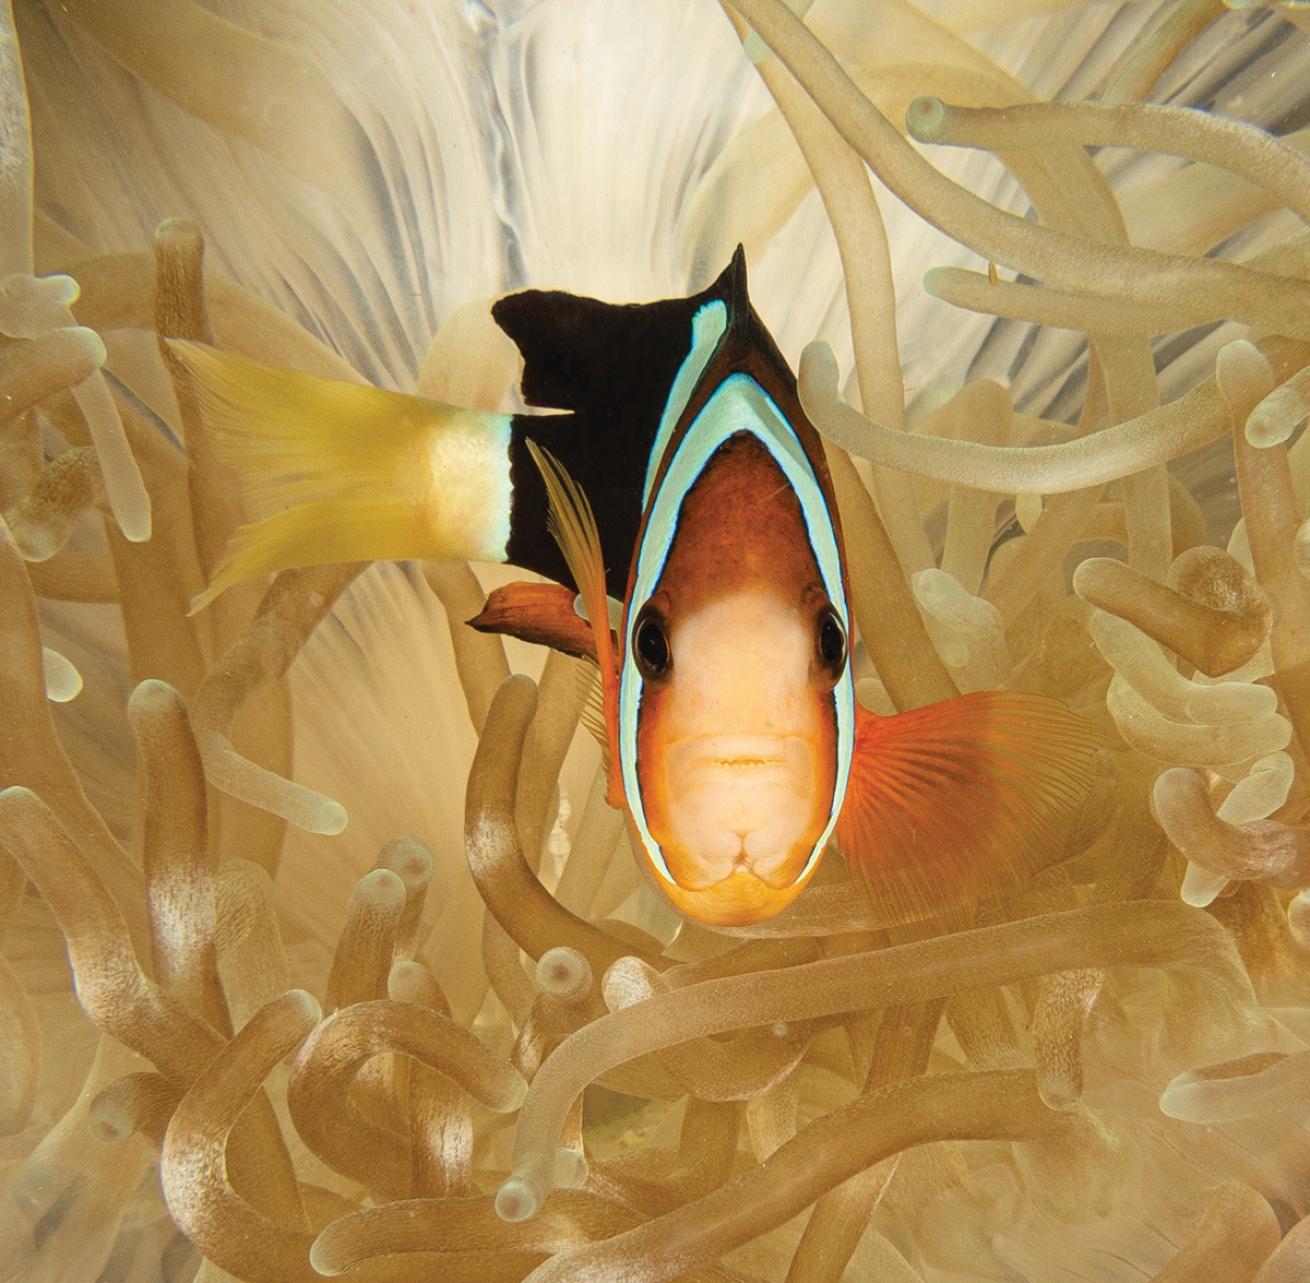 Clarks anemonefish